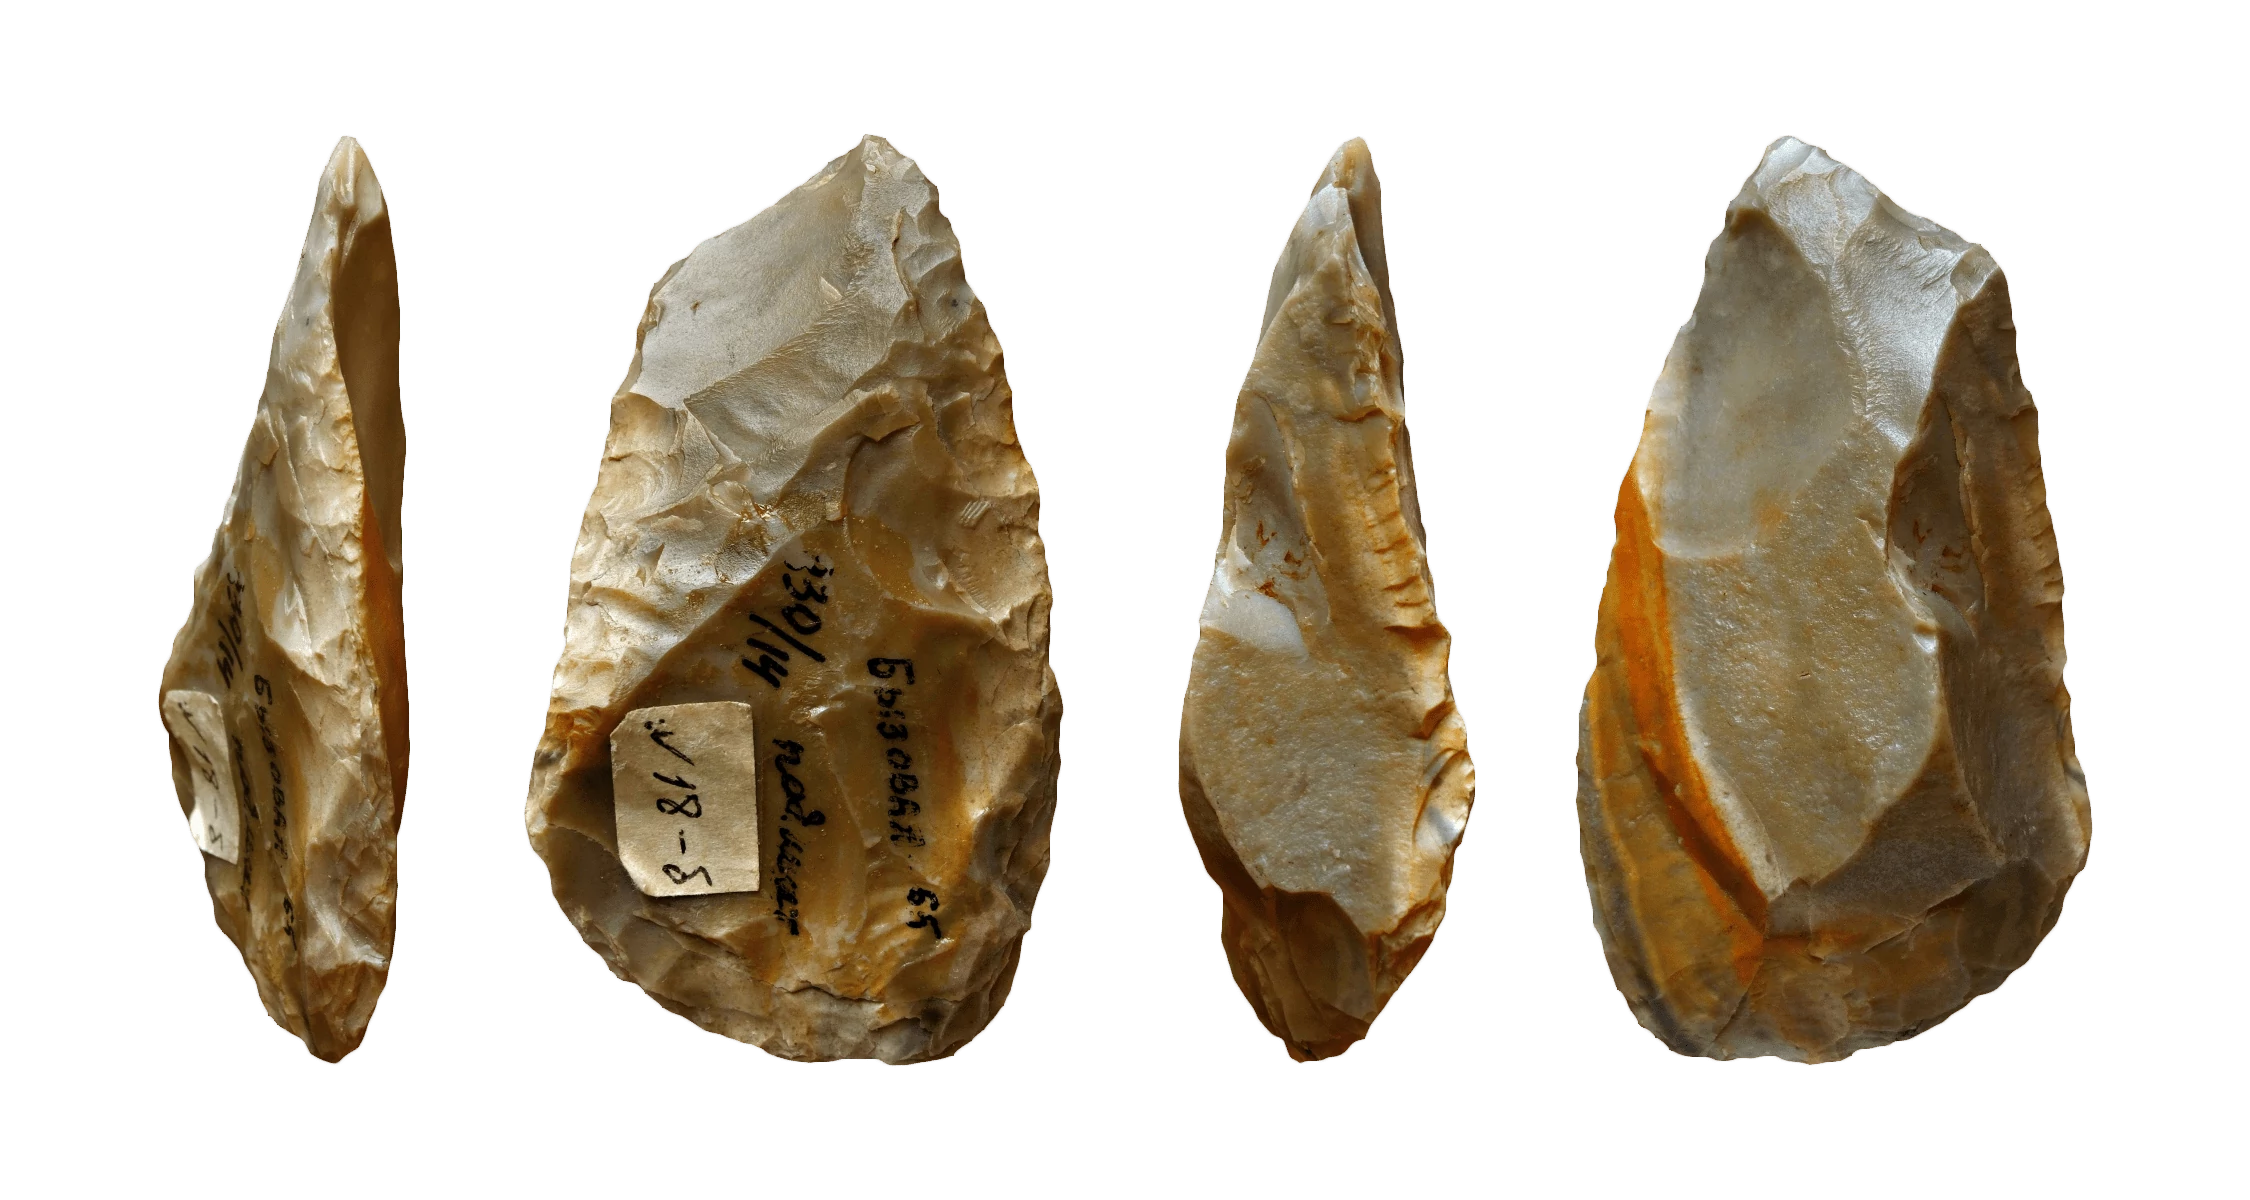 Keilmesser Stone Tool, Upper Paleolithic